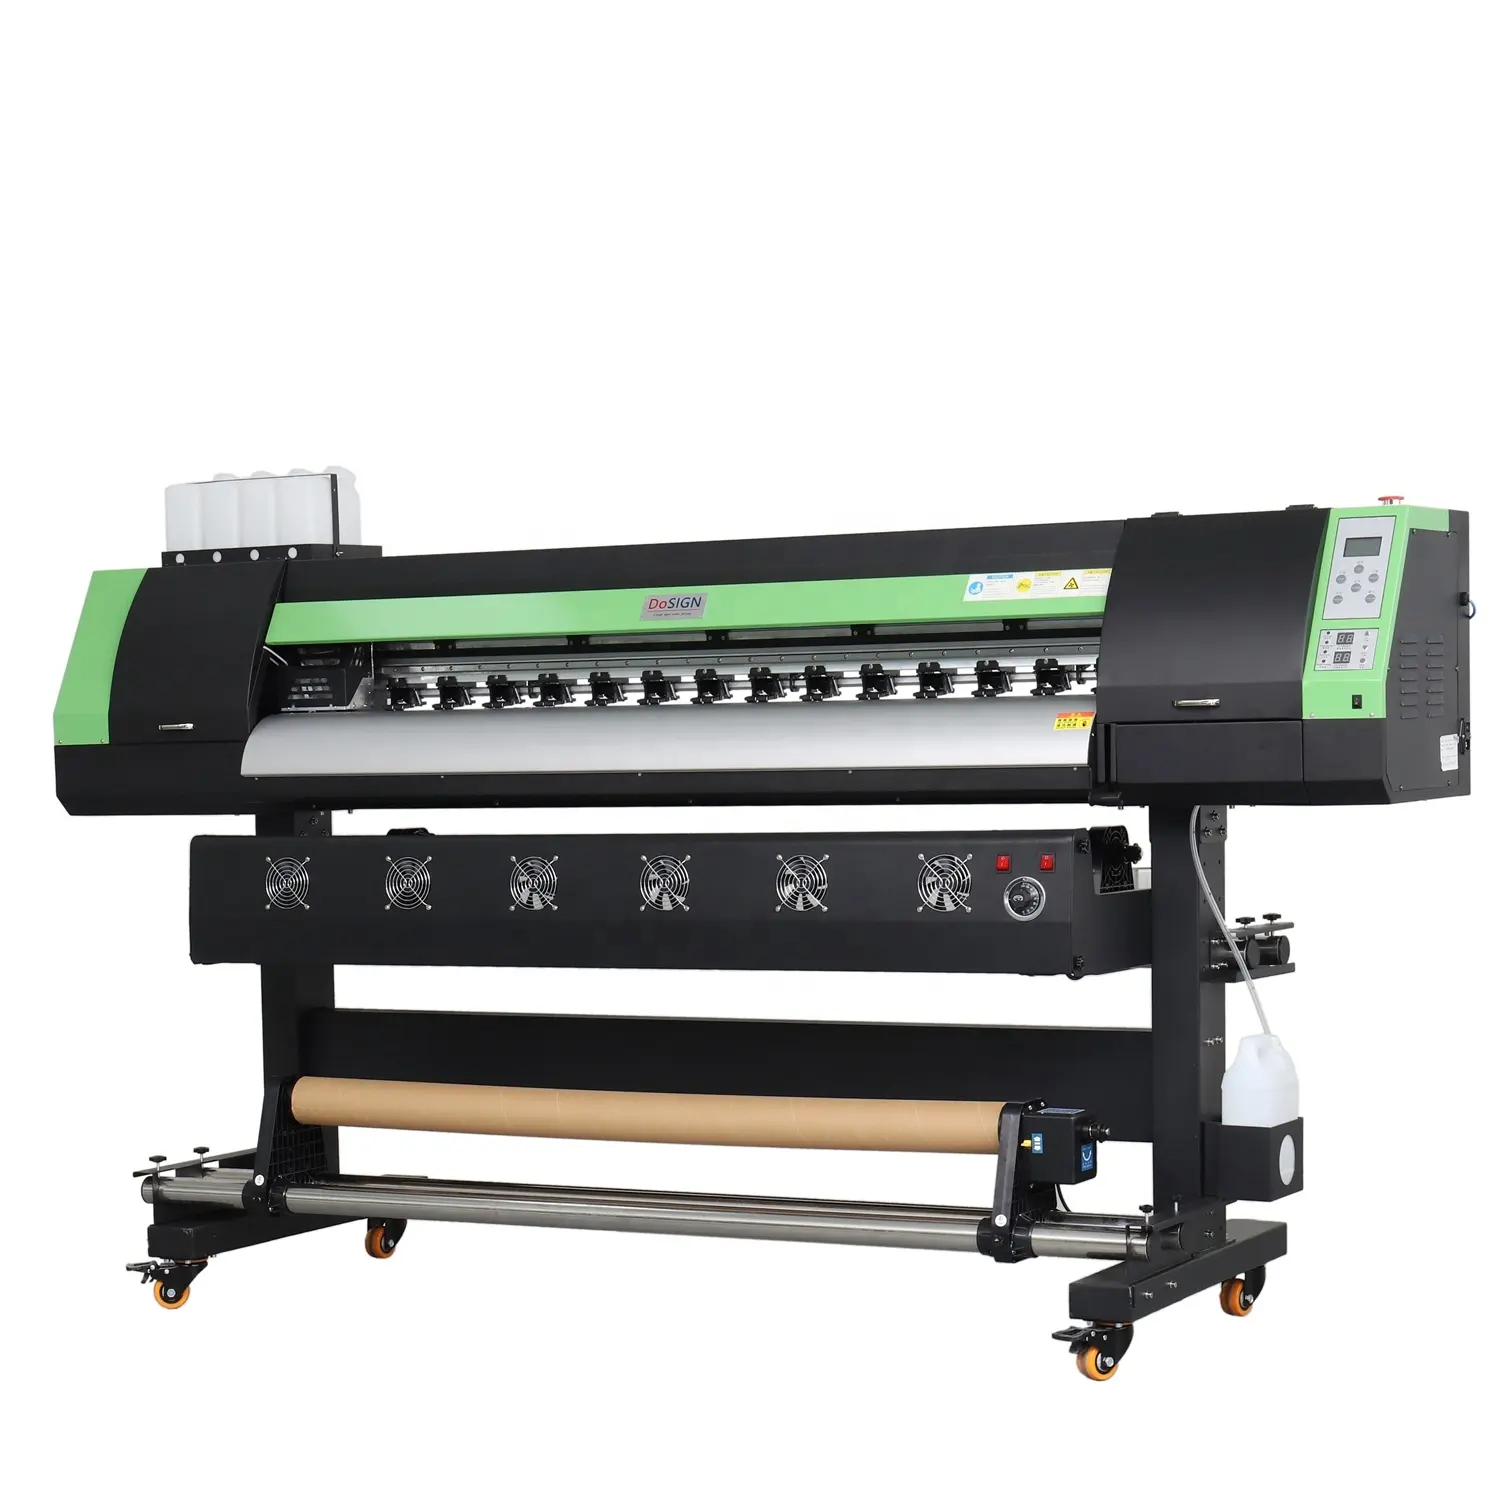 Dosign-impresora digital de inyección de tinta ecológica, precio de impresora de impresión directo de fábrica, 1,6 m, dx5/dx7/xp600